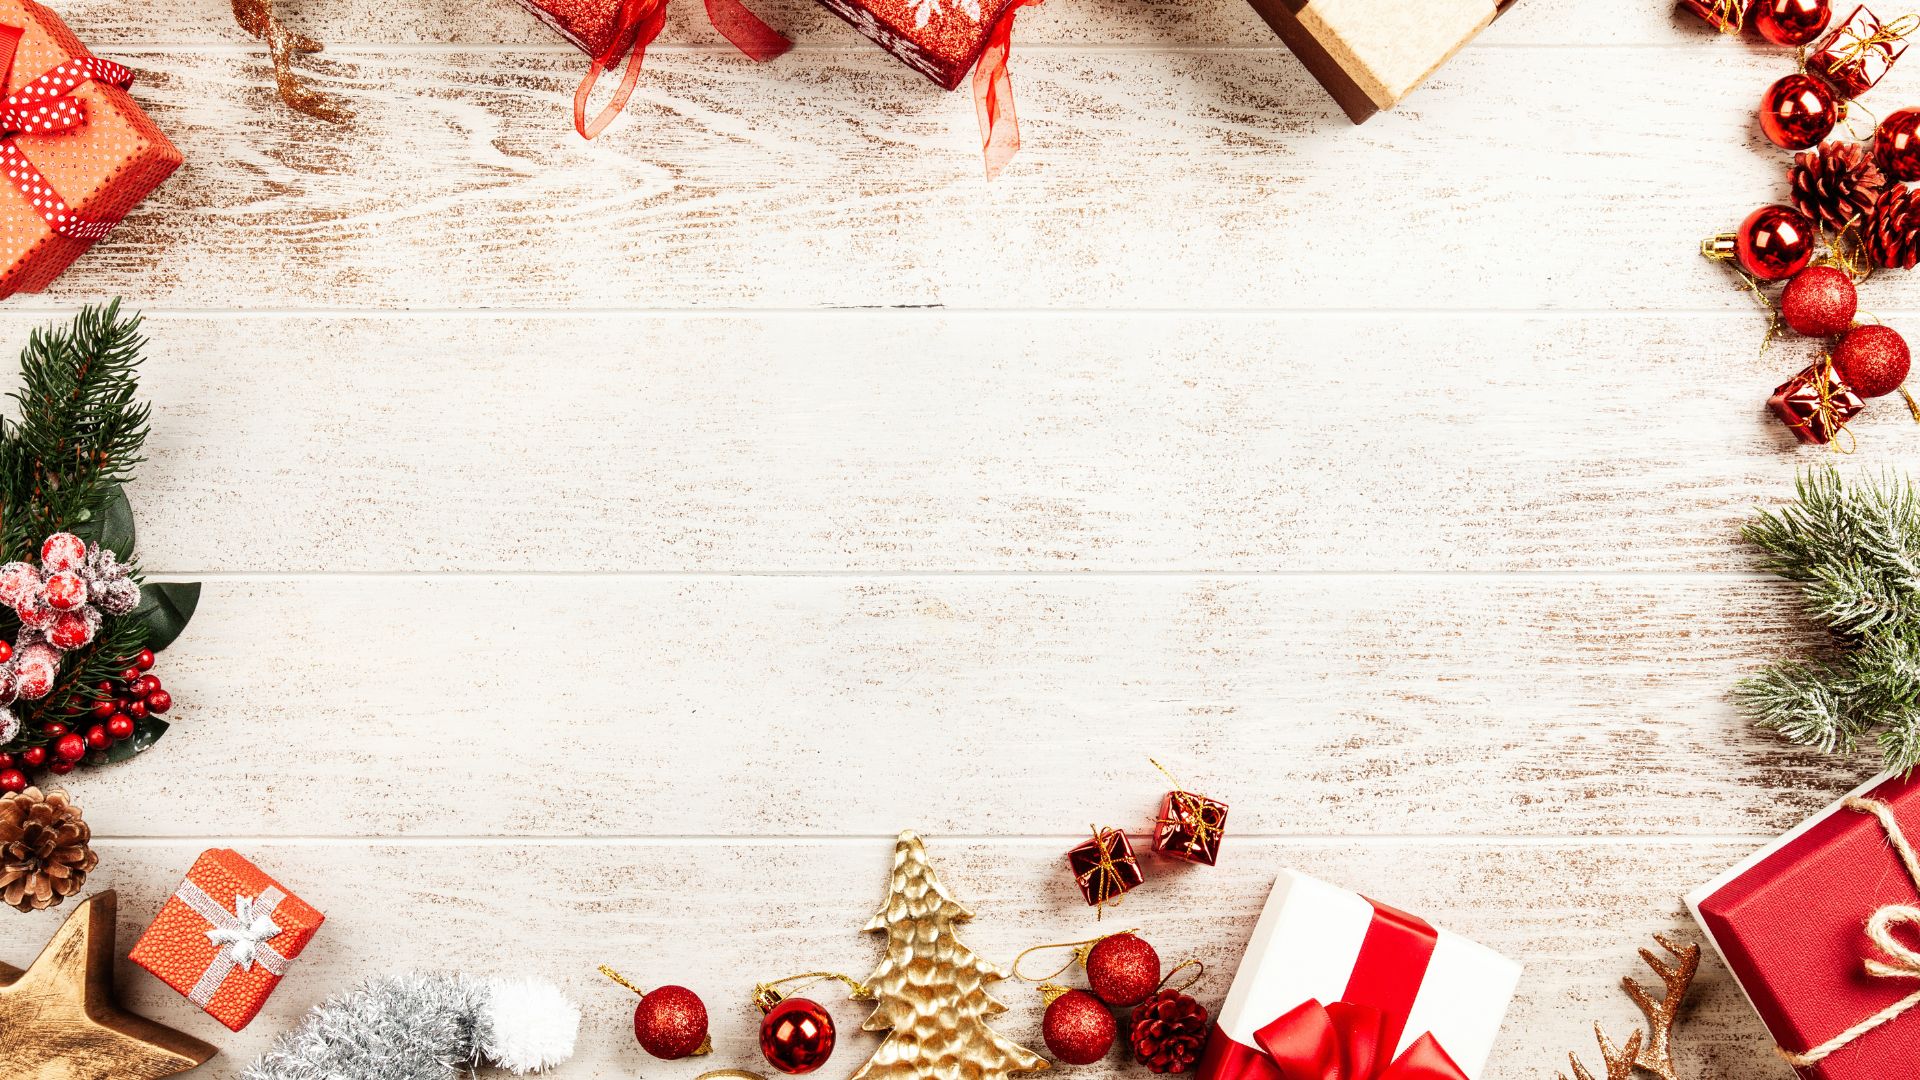 Imagem de fundo bege, moldurada com diversos tipos de enfeites natalinos como: caixas de presentes, bolas, pinhas e pinheiros nas cores vermelho, verde, dourado e prata.